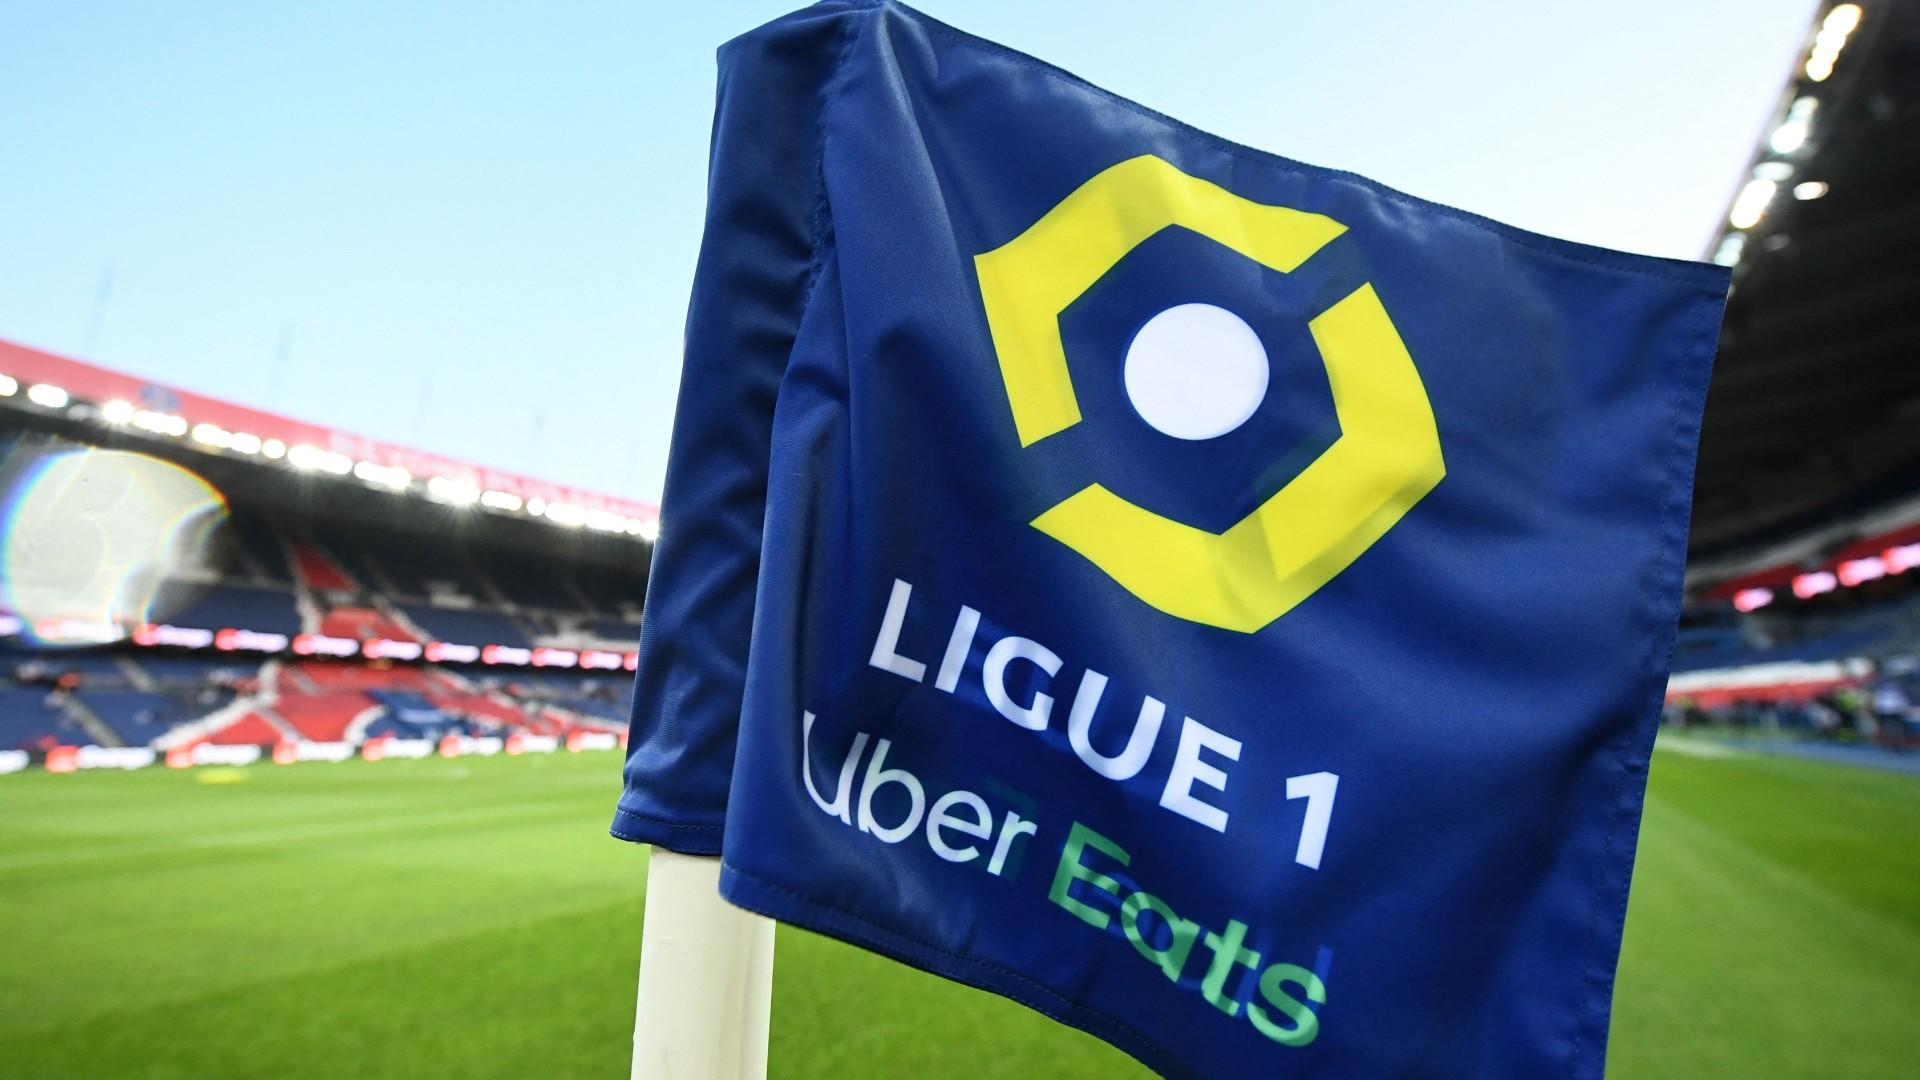 Ligue1-logo-6686tiyu.jpg